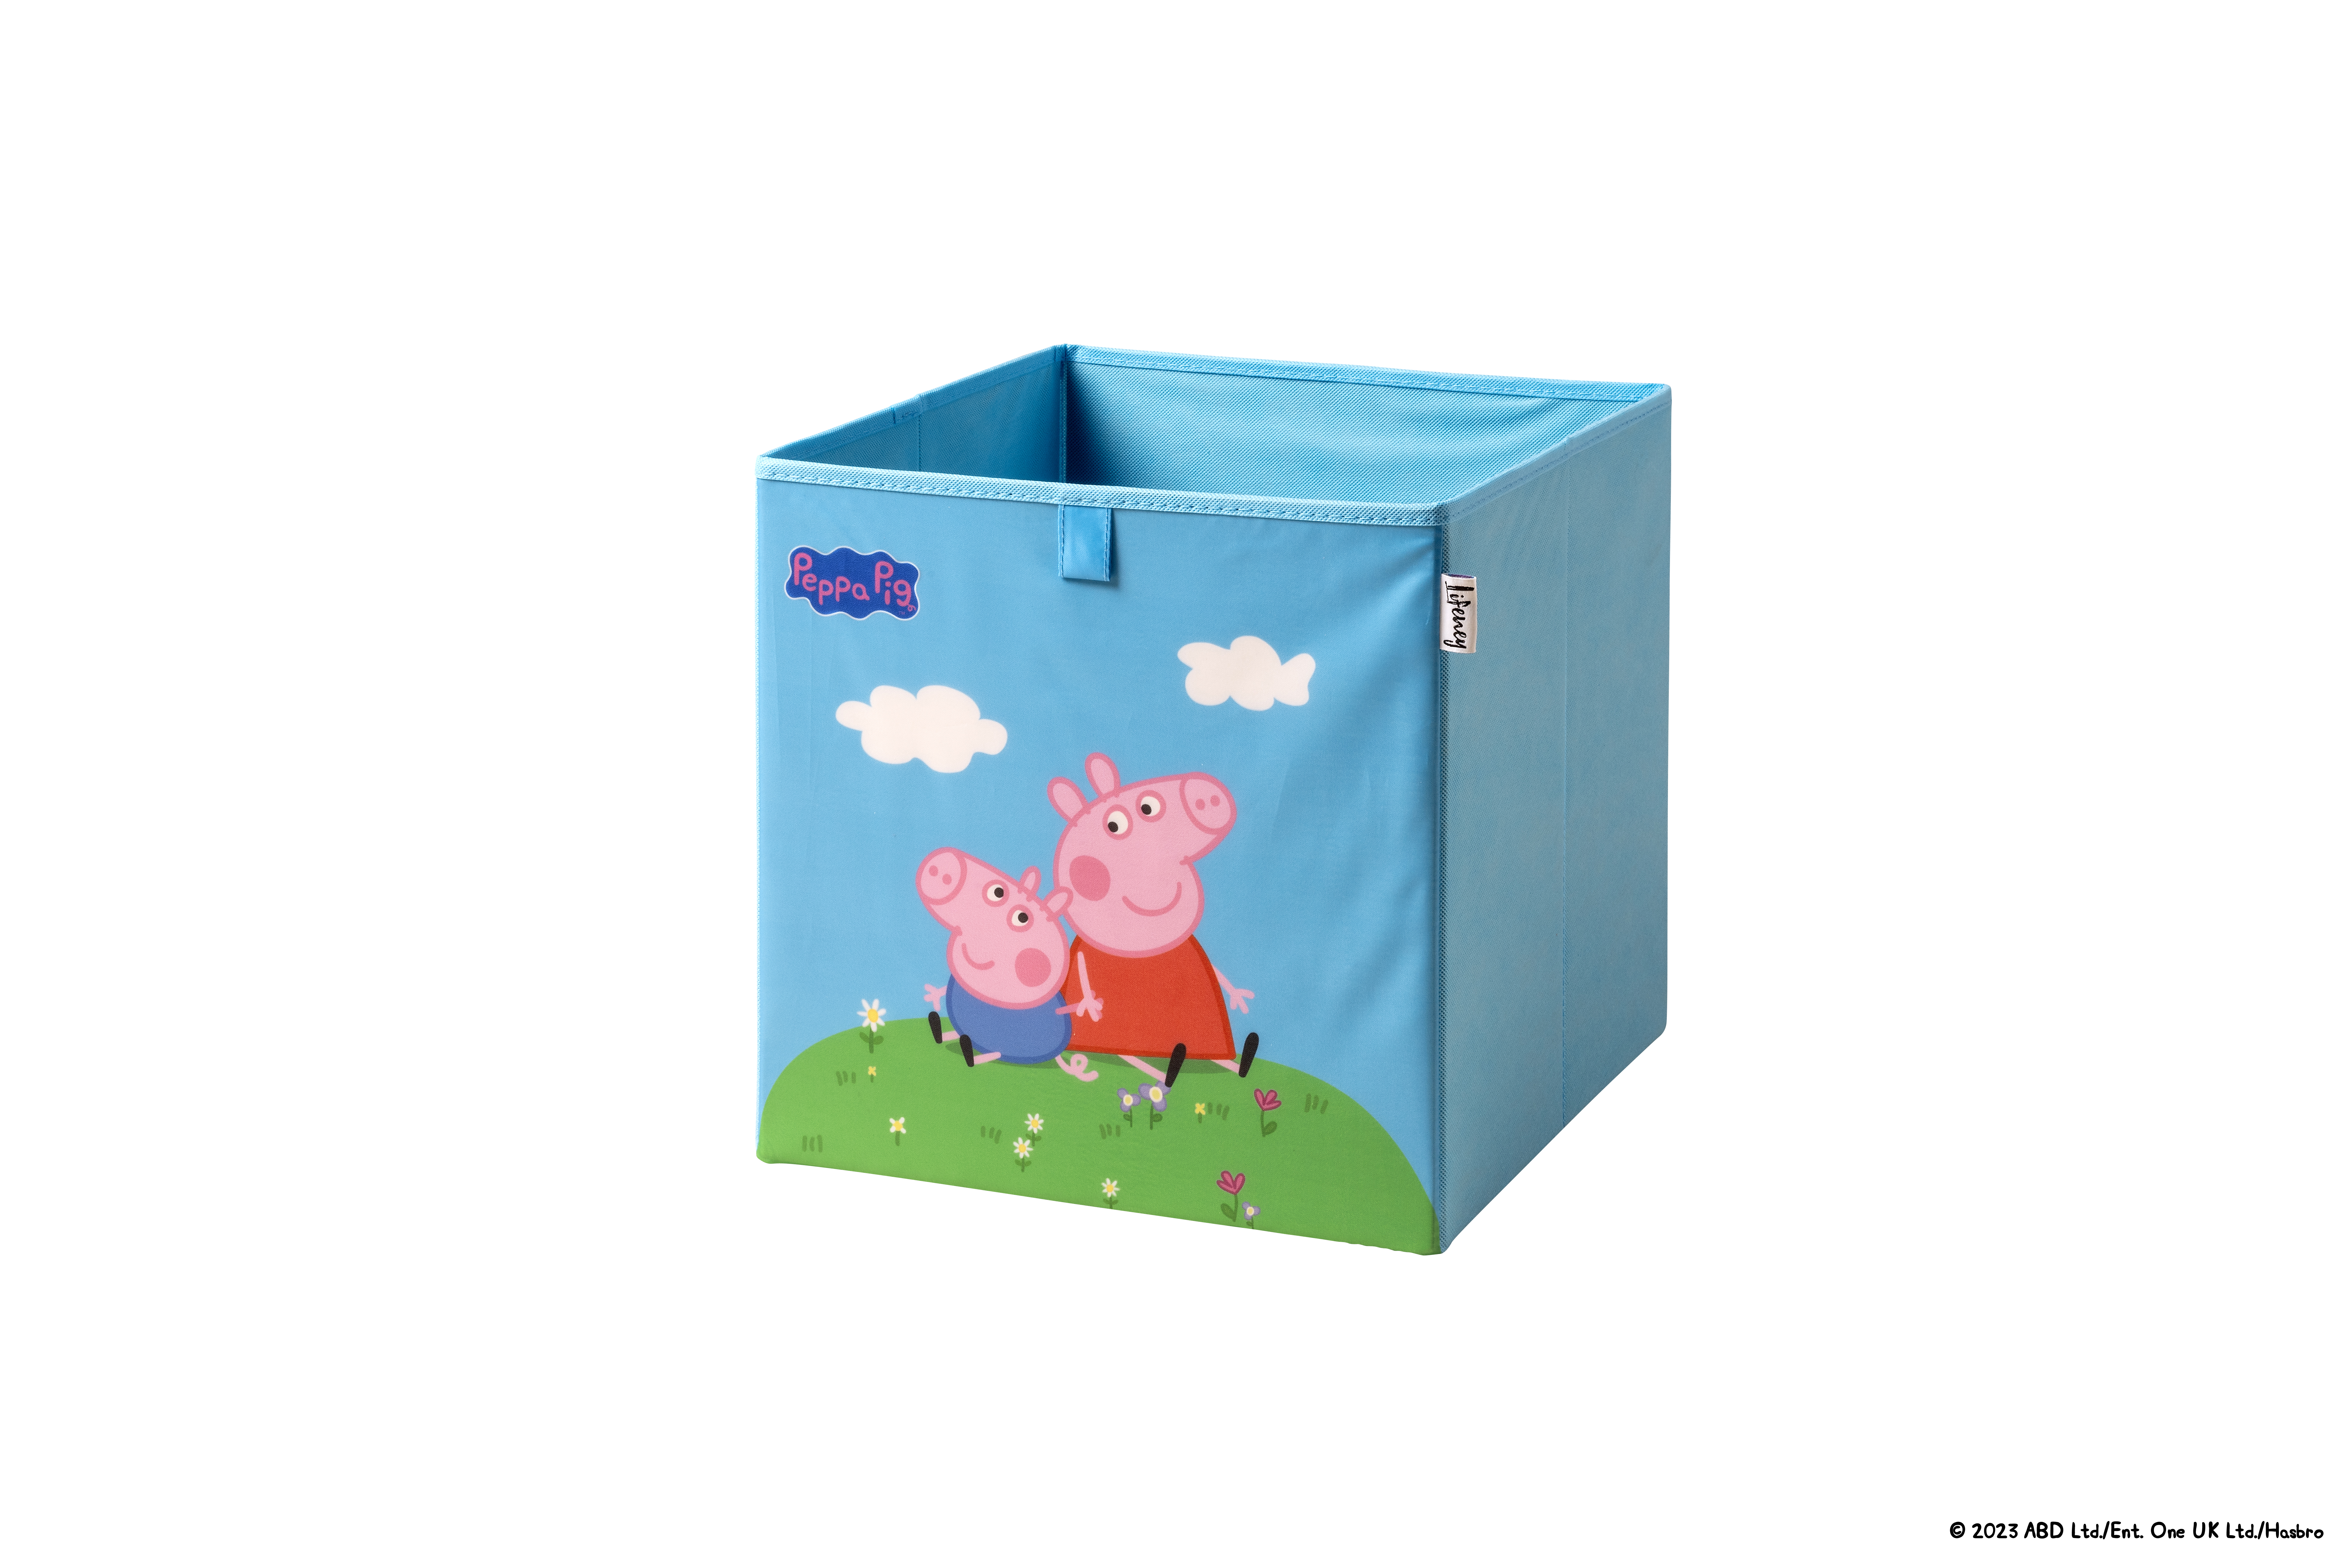  Aufbewahrungsbox Lifeney – Peppa y George sentados, caja de almacenamiento para niños, diseño de Peppa Pig, garantía de 5 años